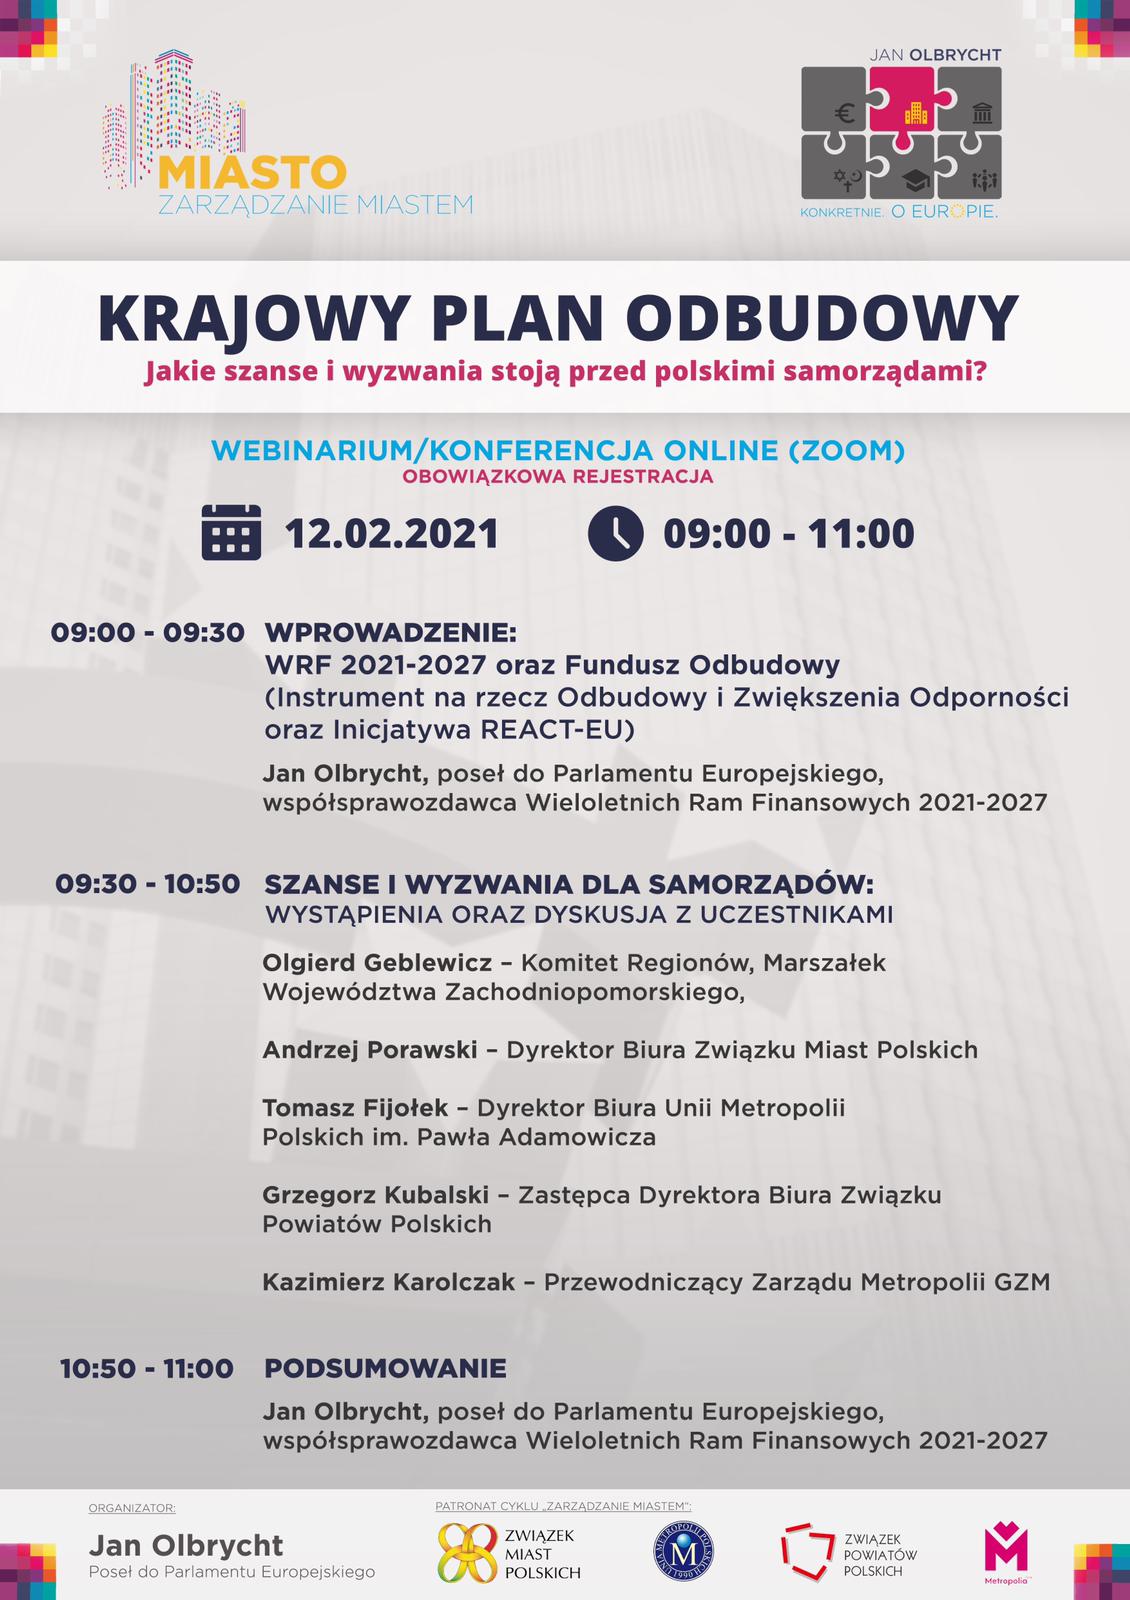 "Krajowy Plan Odbudowy - jakie szanse i wyzwania stoją przed polskimi samorządami?" - zaproszenie na webinarium